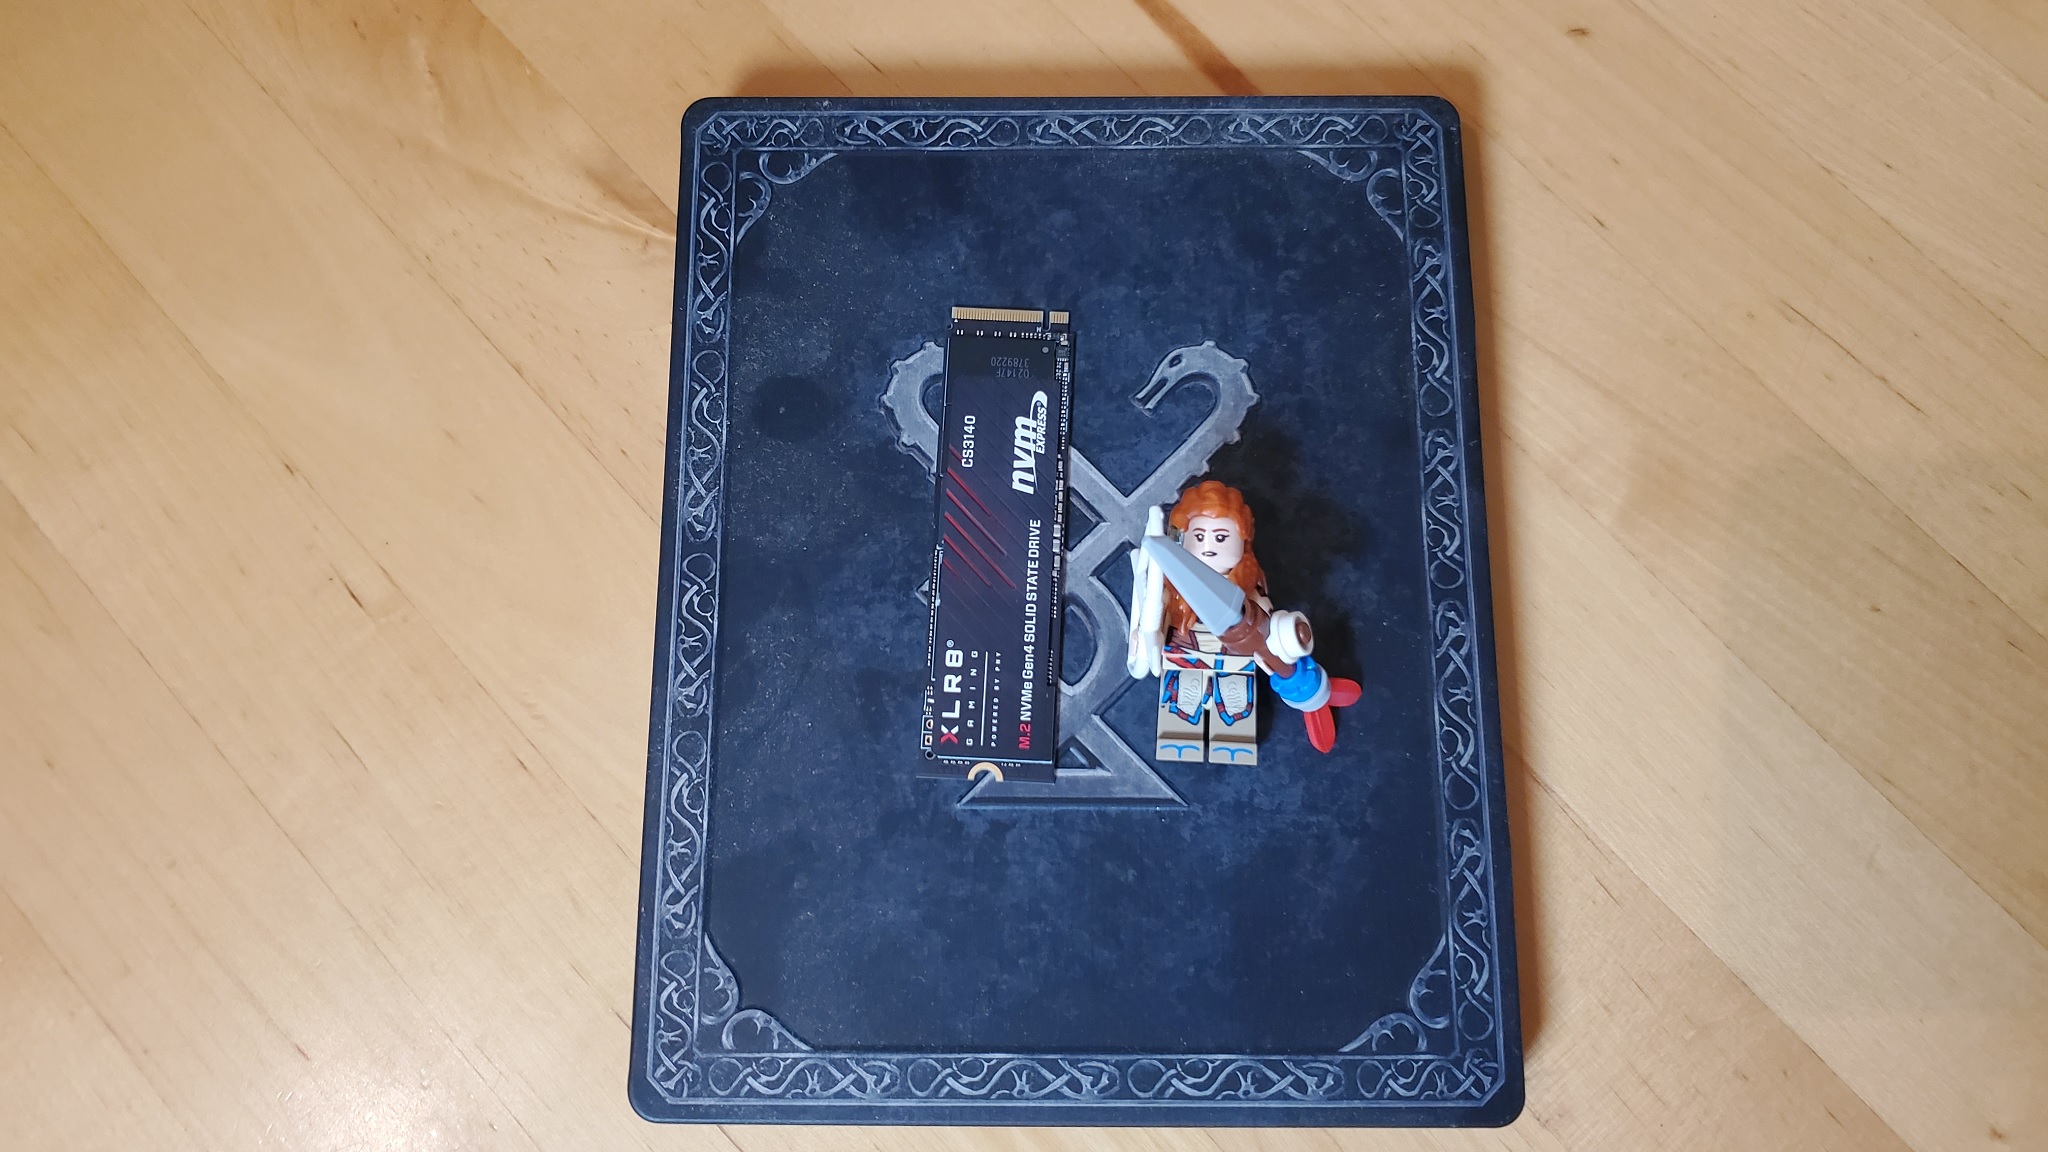 SSD PNY XLR8 con LEGO Aloy en el Steelbook del juego